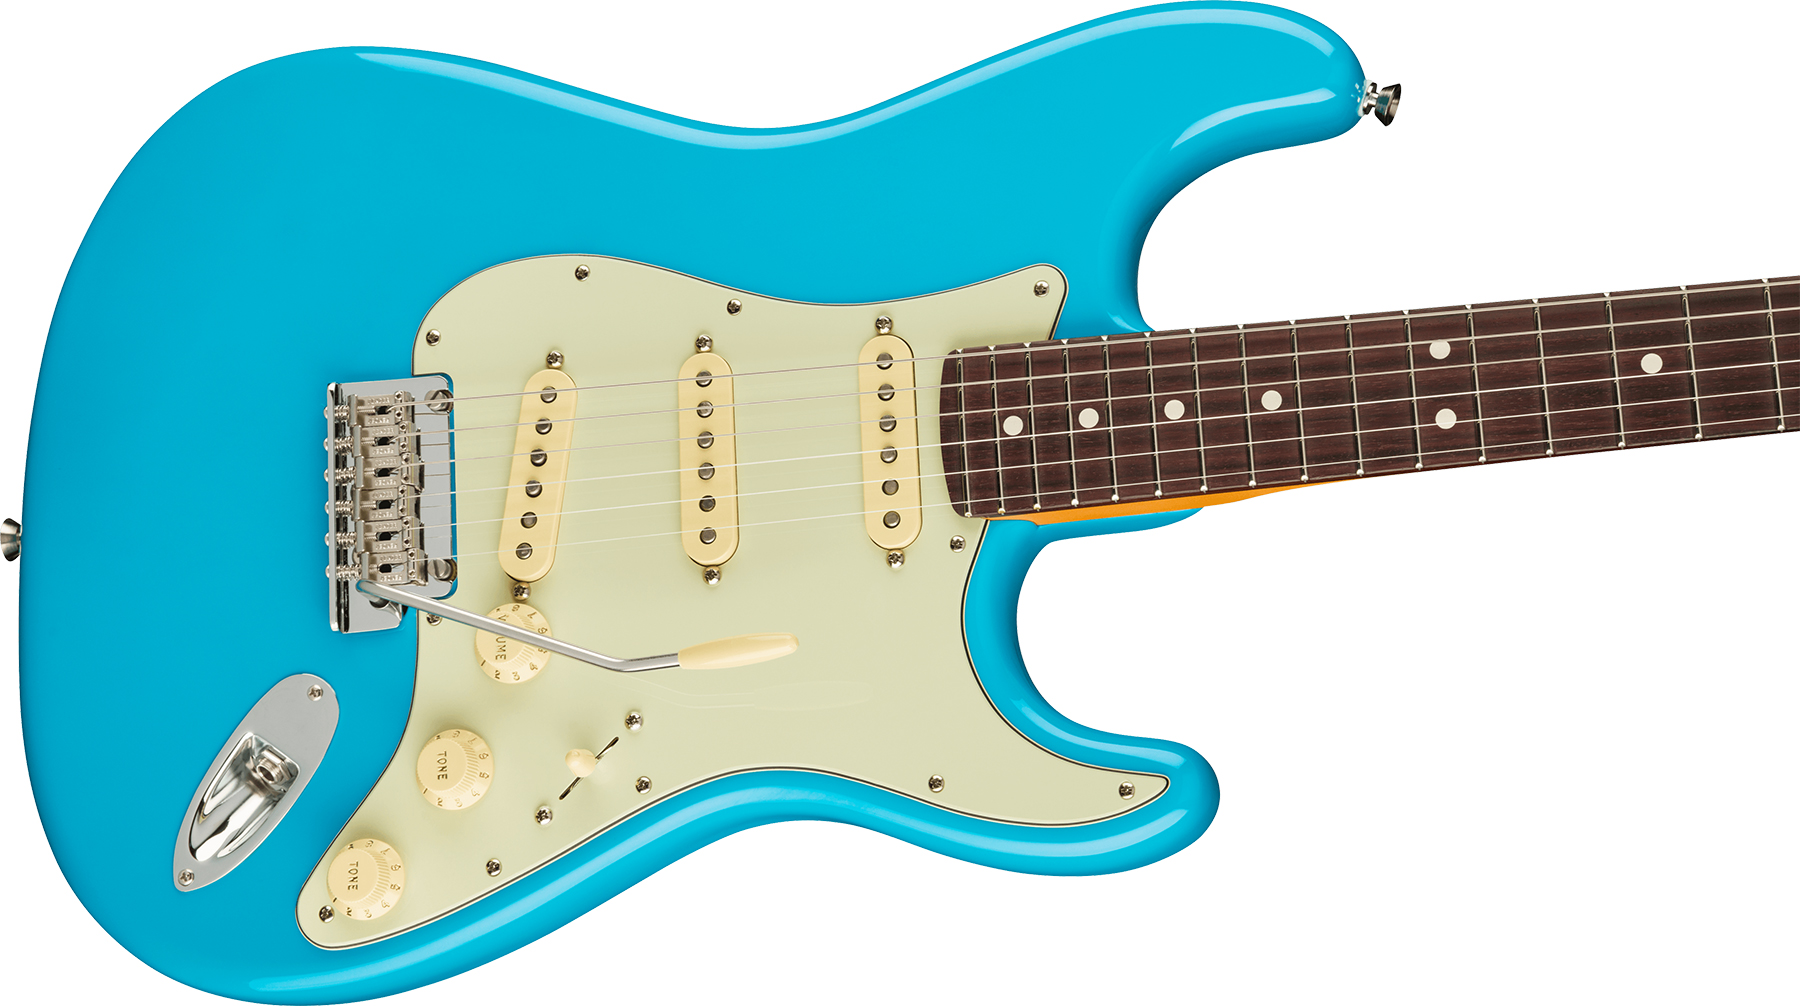 Fender Strat American Professional Ii Usa Rw - Miami Blue - Guitarra eléctrica con forma de str. - Variation 2